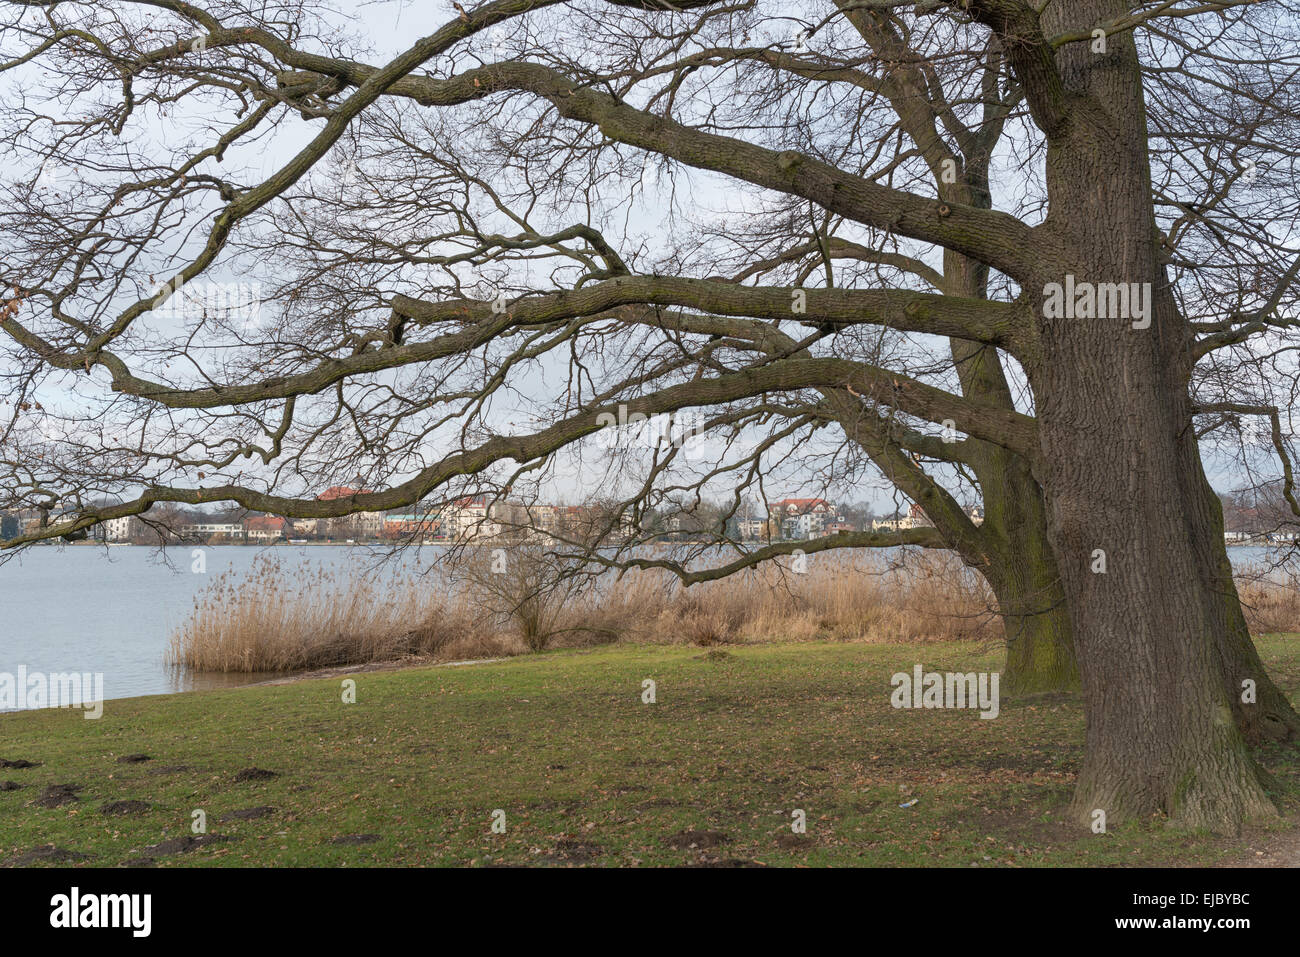 Oak trees near Potsdam Germany Stock Photo